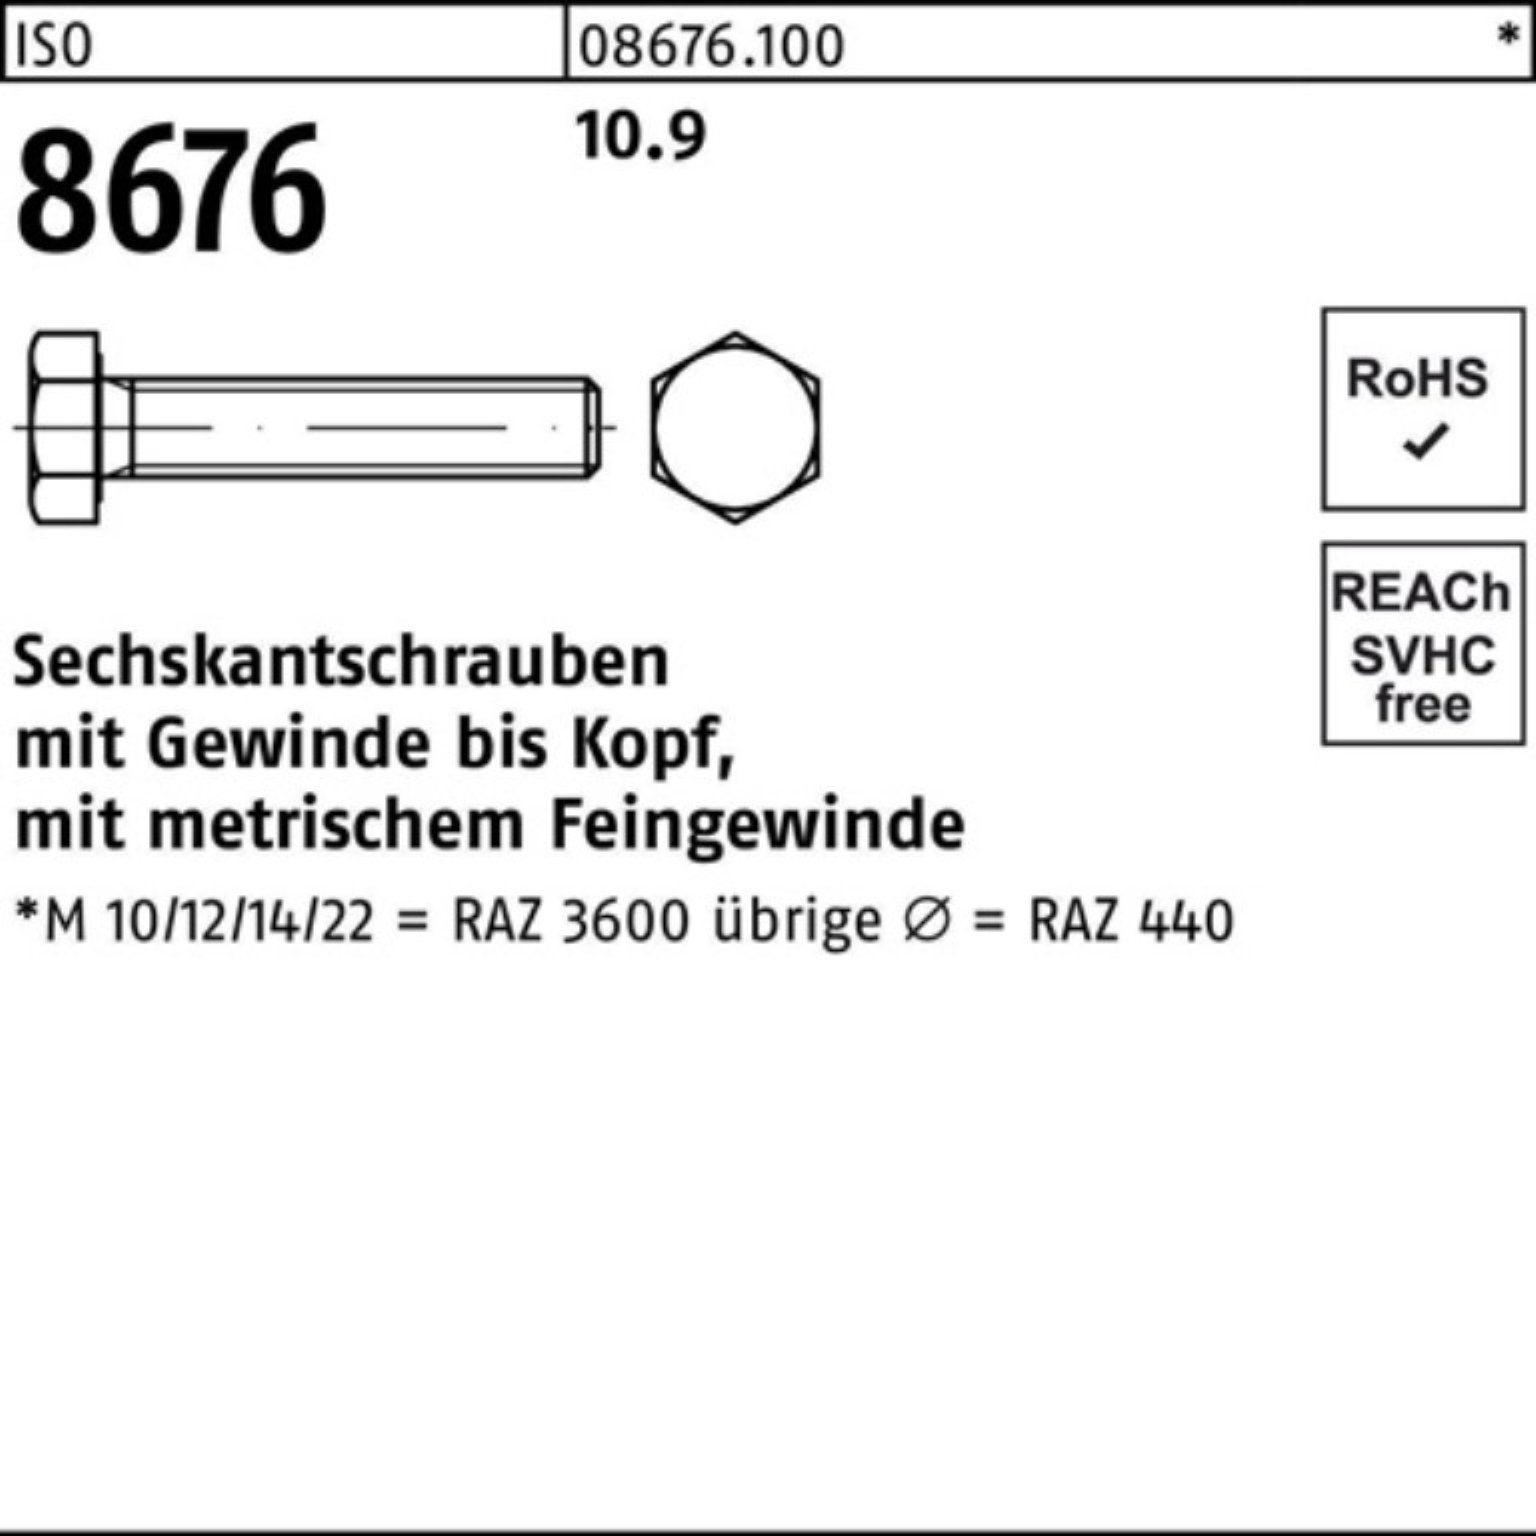 Reyher VG IS 10.9 ISO Sechskantschraube 8676 Pack 100er 25 M20x1,5x150 Stück Sechskantschraube